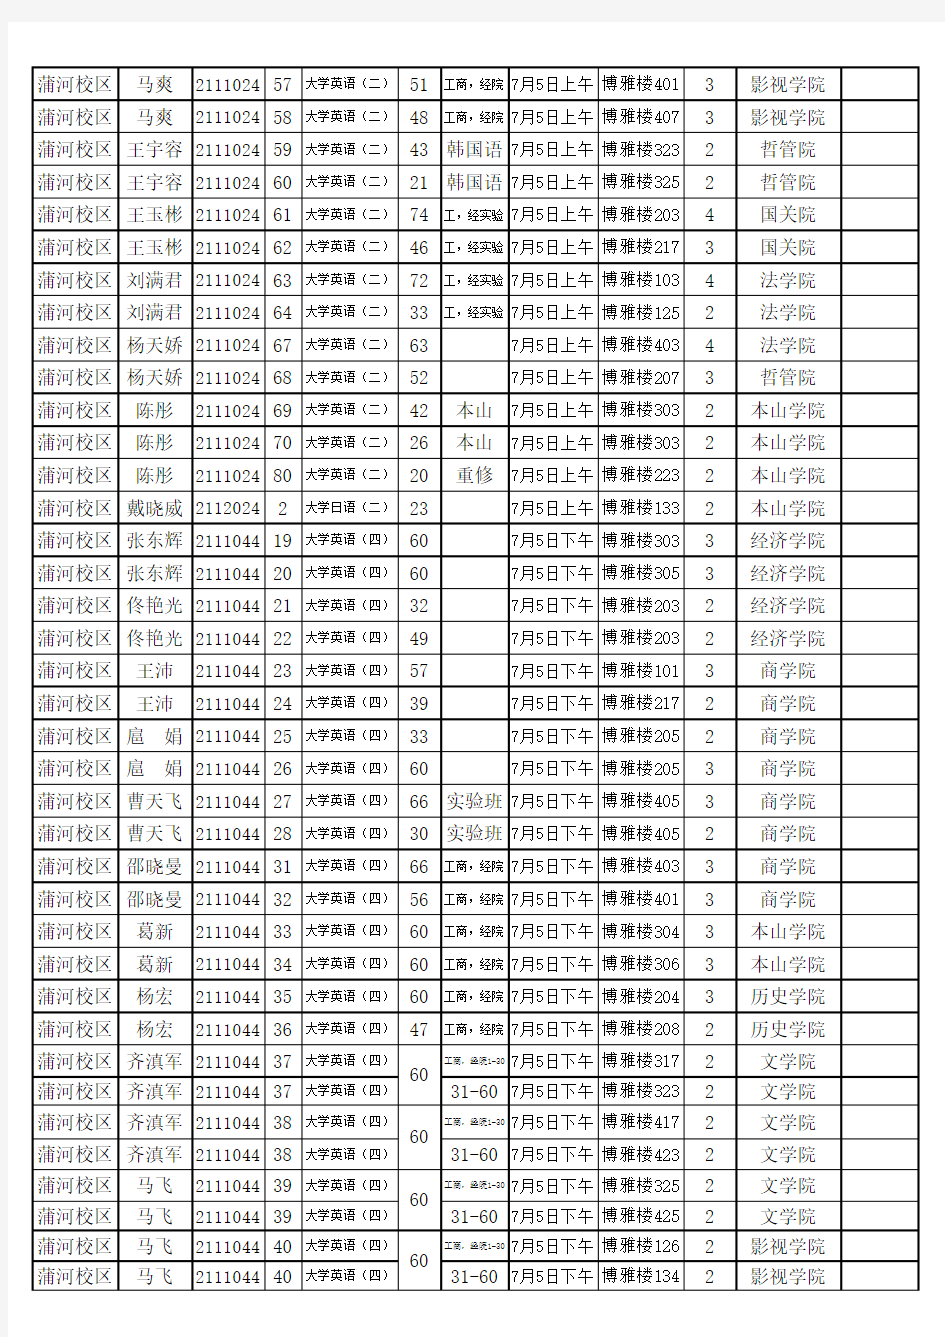 辽宁大学2009-2010学年第二学期期末考试安排表(公共课部分)